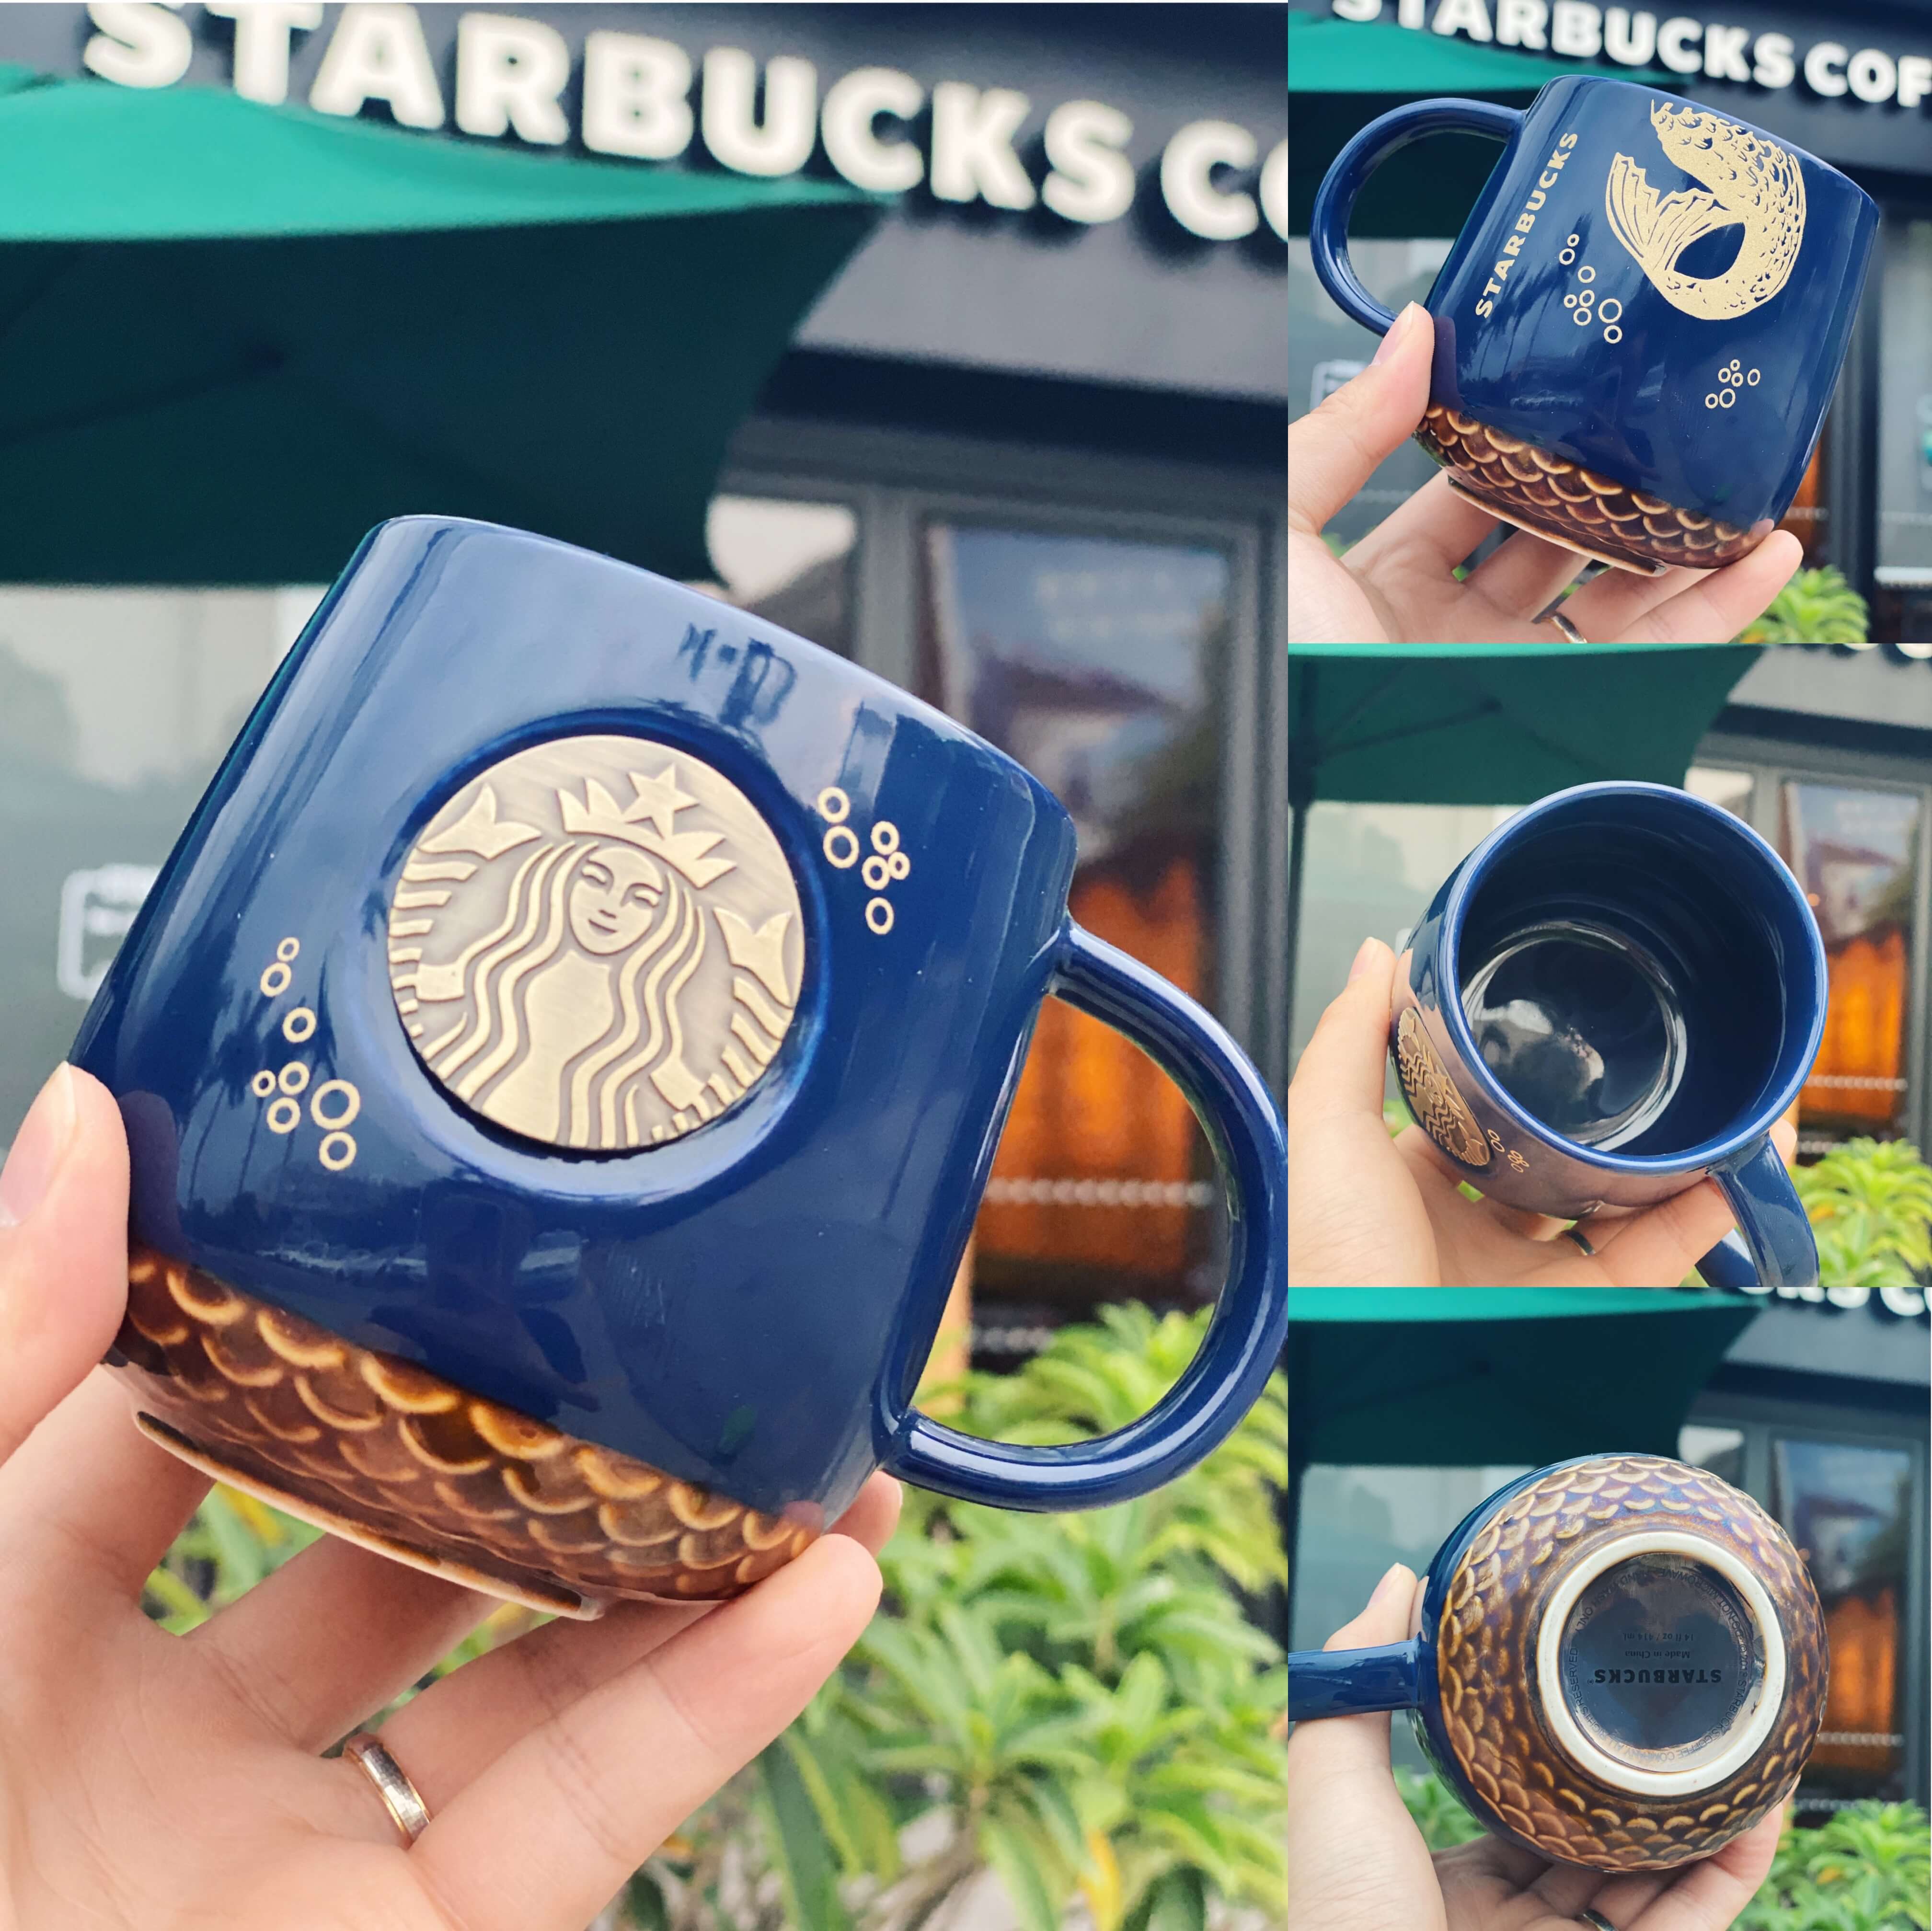 ภาพประกอบของ แก้ว Starbucks สุดเก๋ ใช้ได้ทั้งในออฟฟิศ ที่บ้าน หรือเป็นของขวัญก็ได้ 14oz